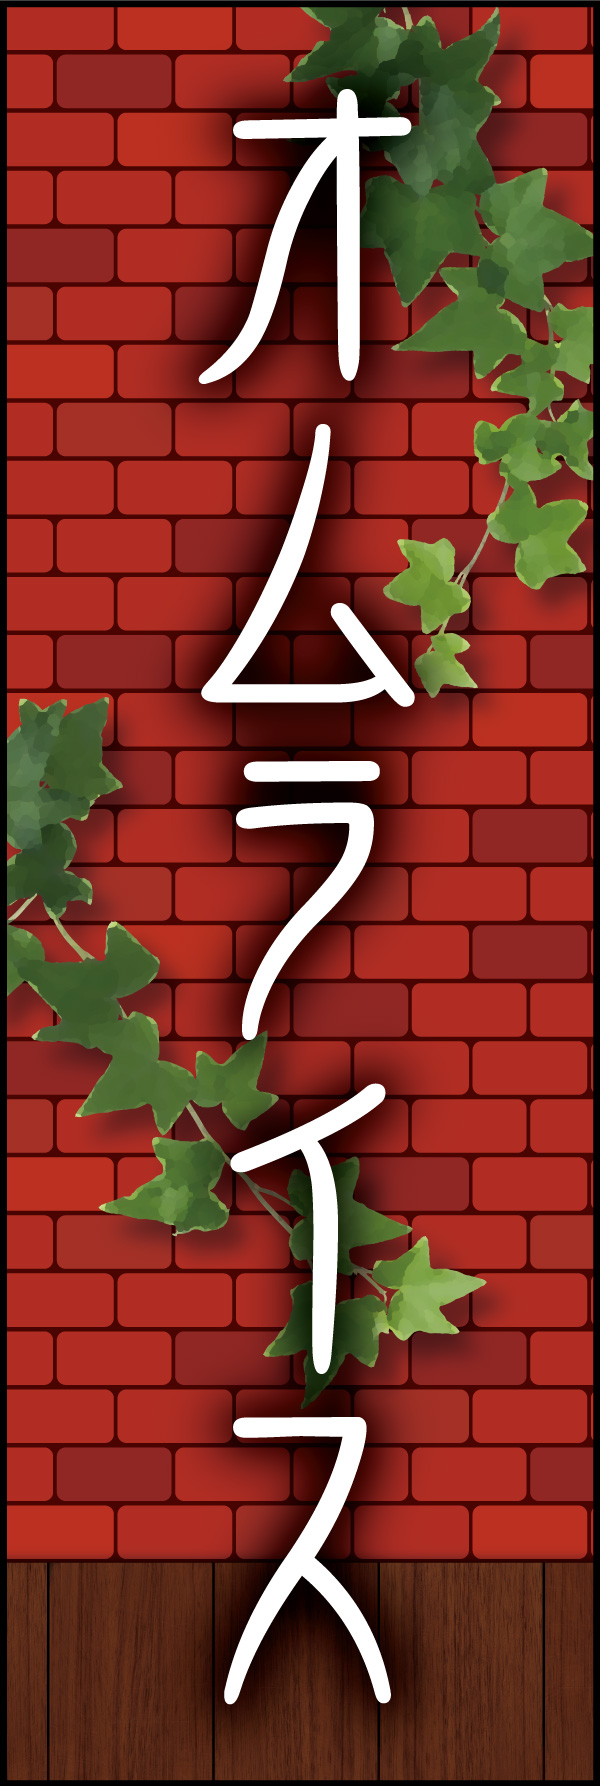 オムライス 05「オムライス」ののぼりです。赤煉瓦をバックに、懐かしい洋食屋さんをイメージしてデザインしました。(Y.M) 